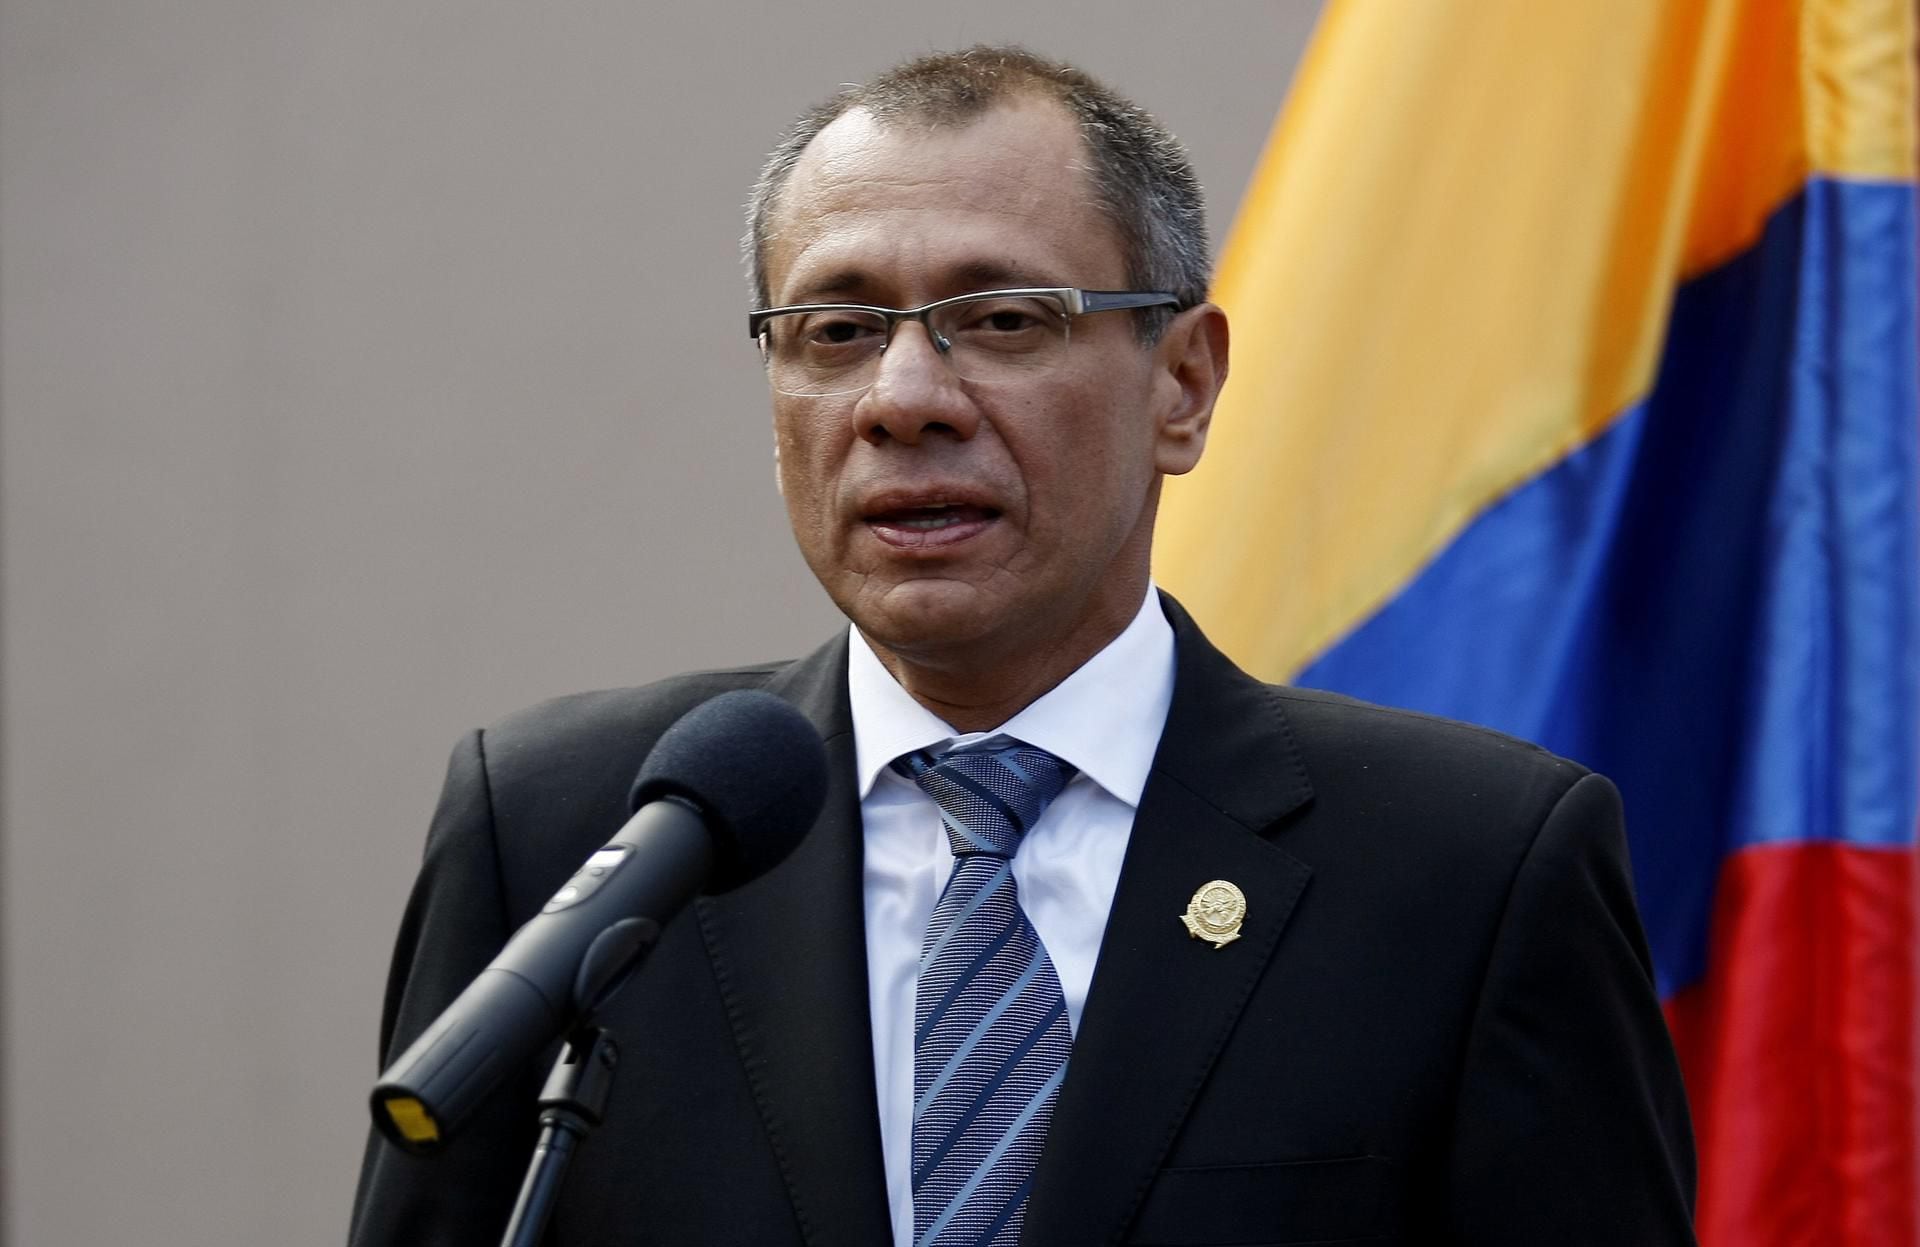 Hospitalizan a Jorge Glas, exvicepresidente de Ecuador: Sospechan de intento de suicidio